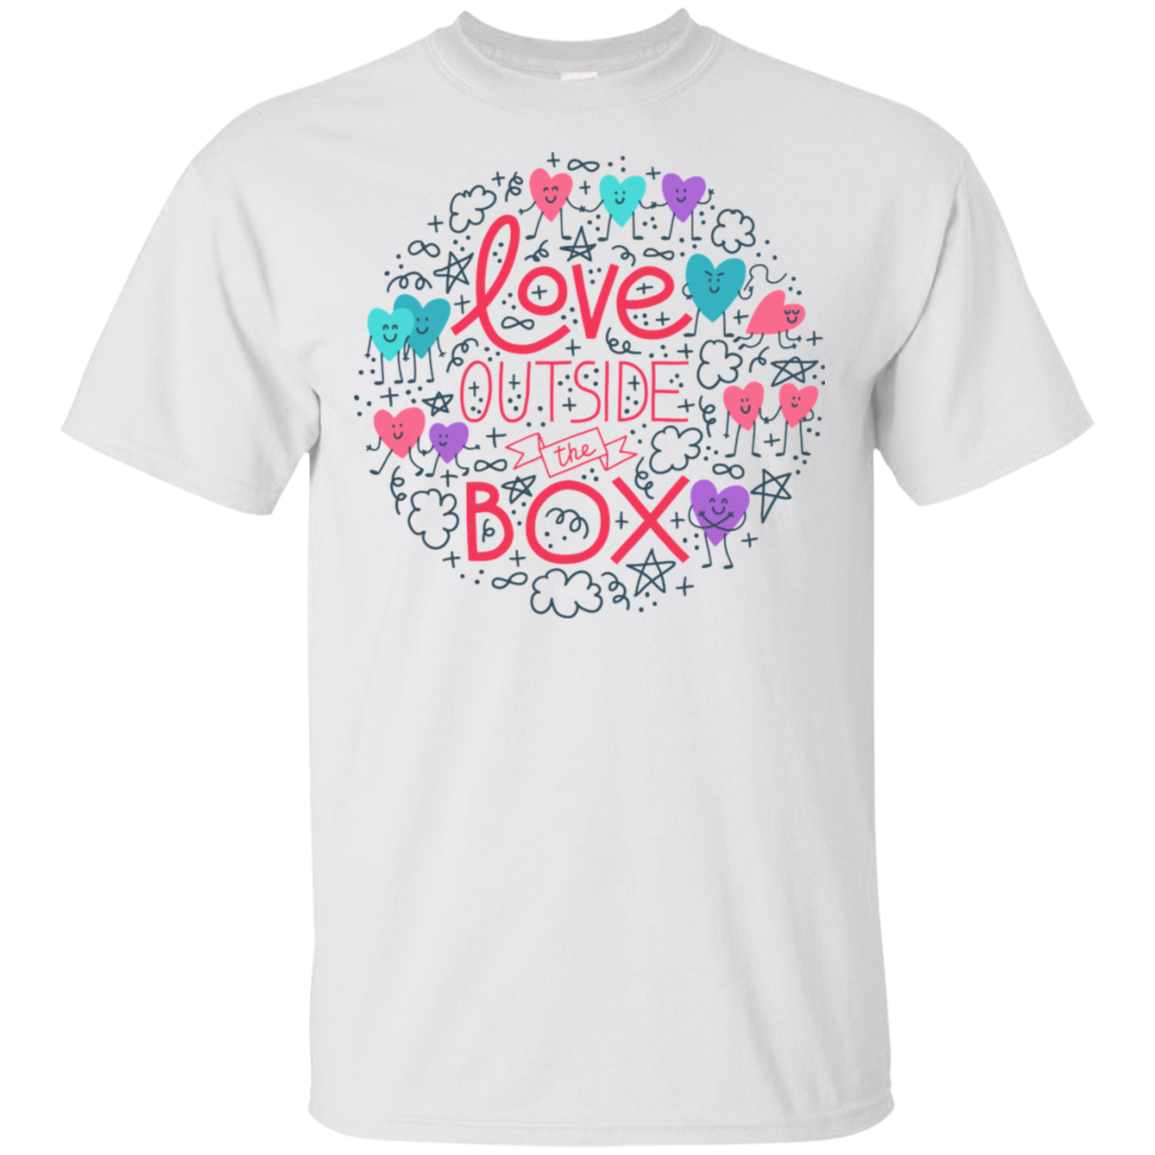 Love Outside The Box Half sleeves T Shirt LGBT Pride round neck shirt gay pride tshirt